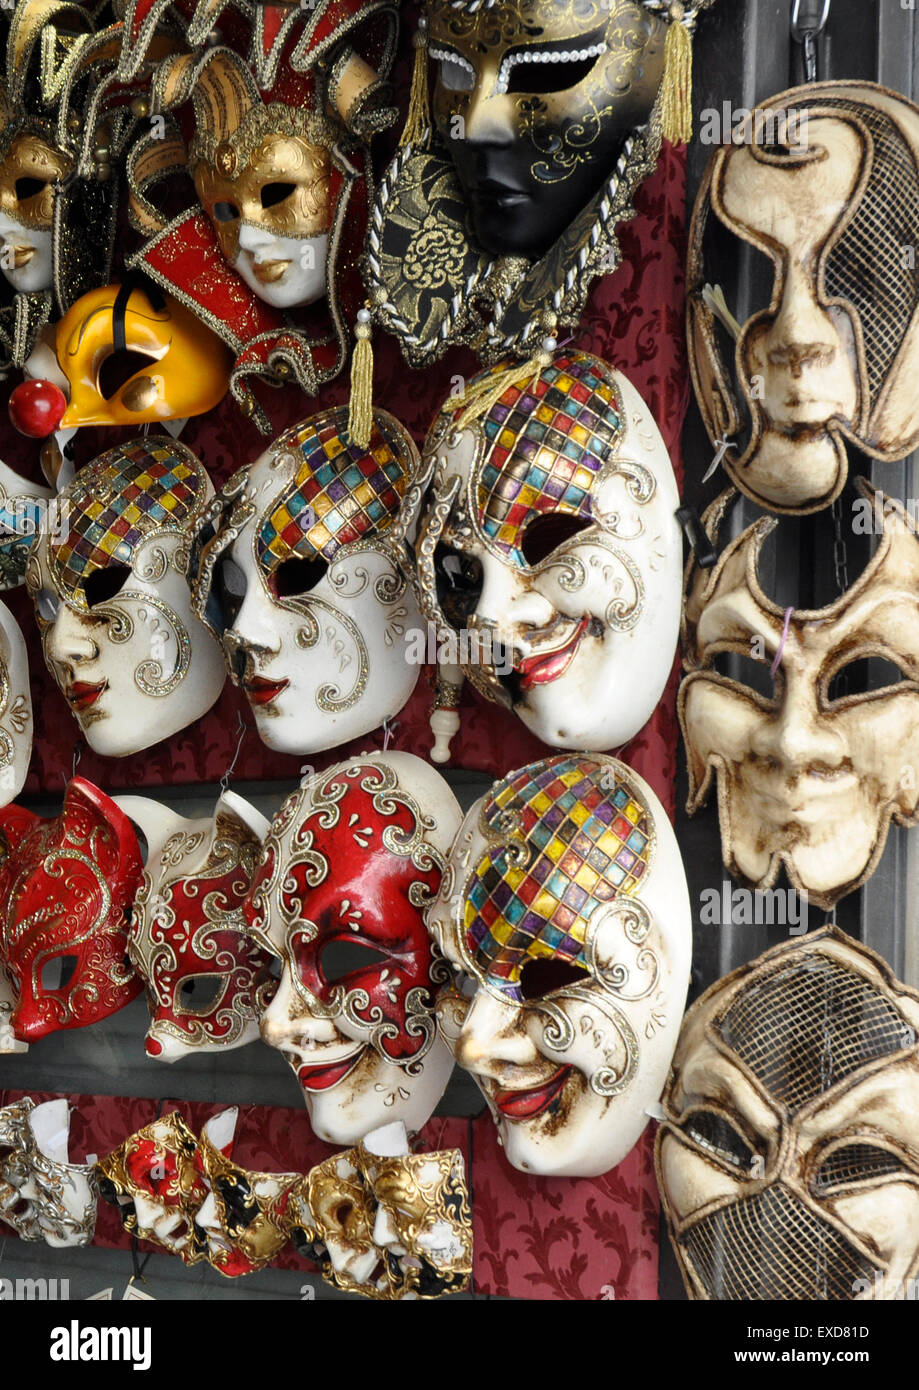 Italie - Venise - Cannaregio région - street market les couleurs de l'image carnaval plein de mystère et d'intrigue Banque D'Images